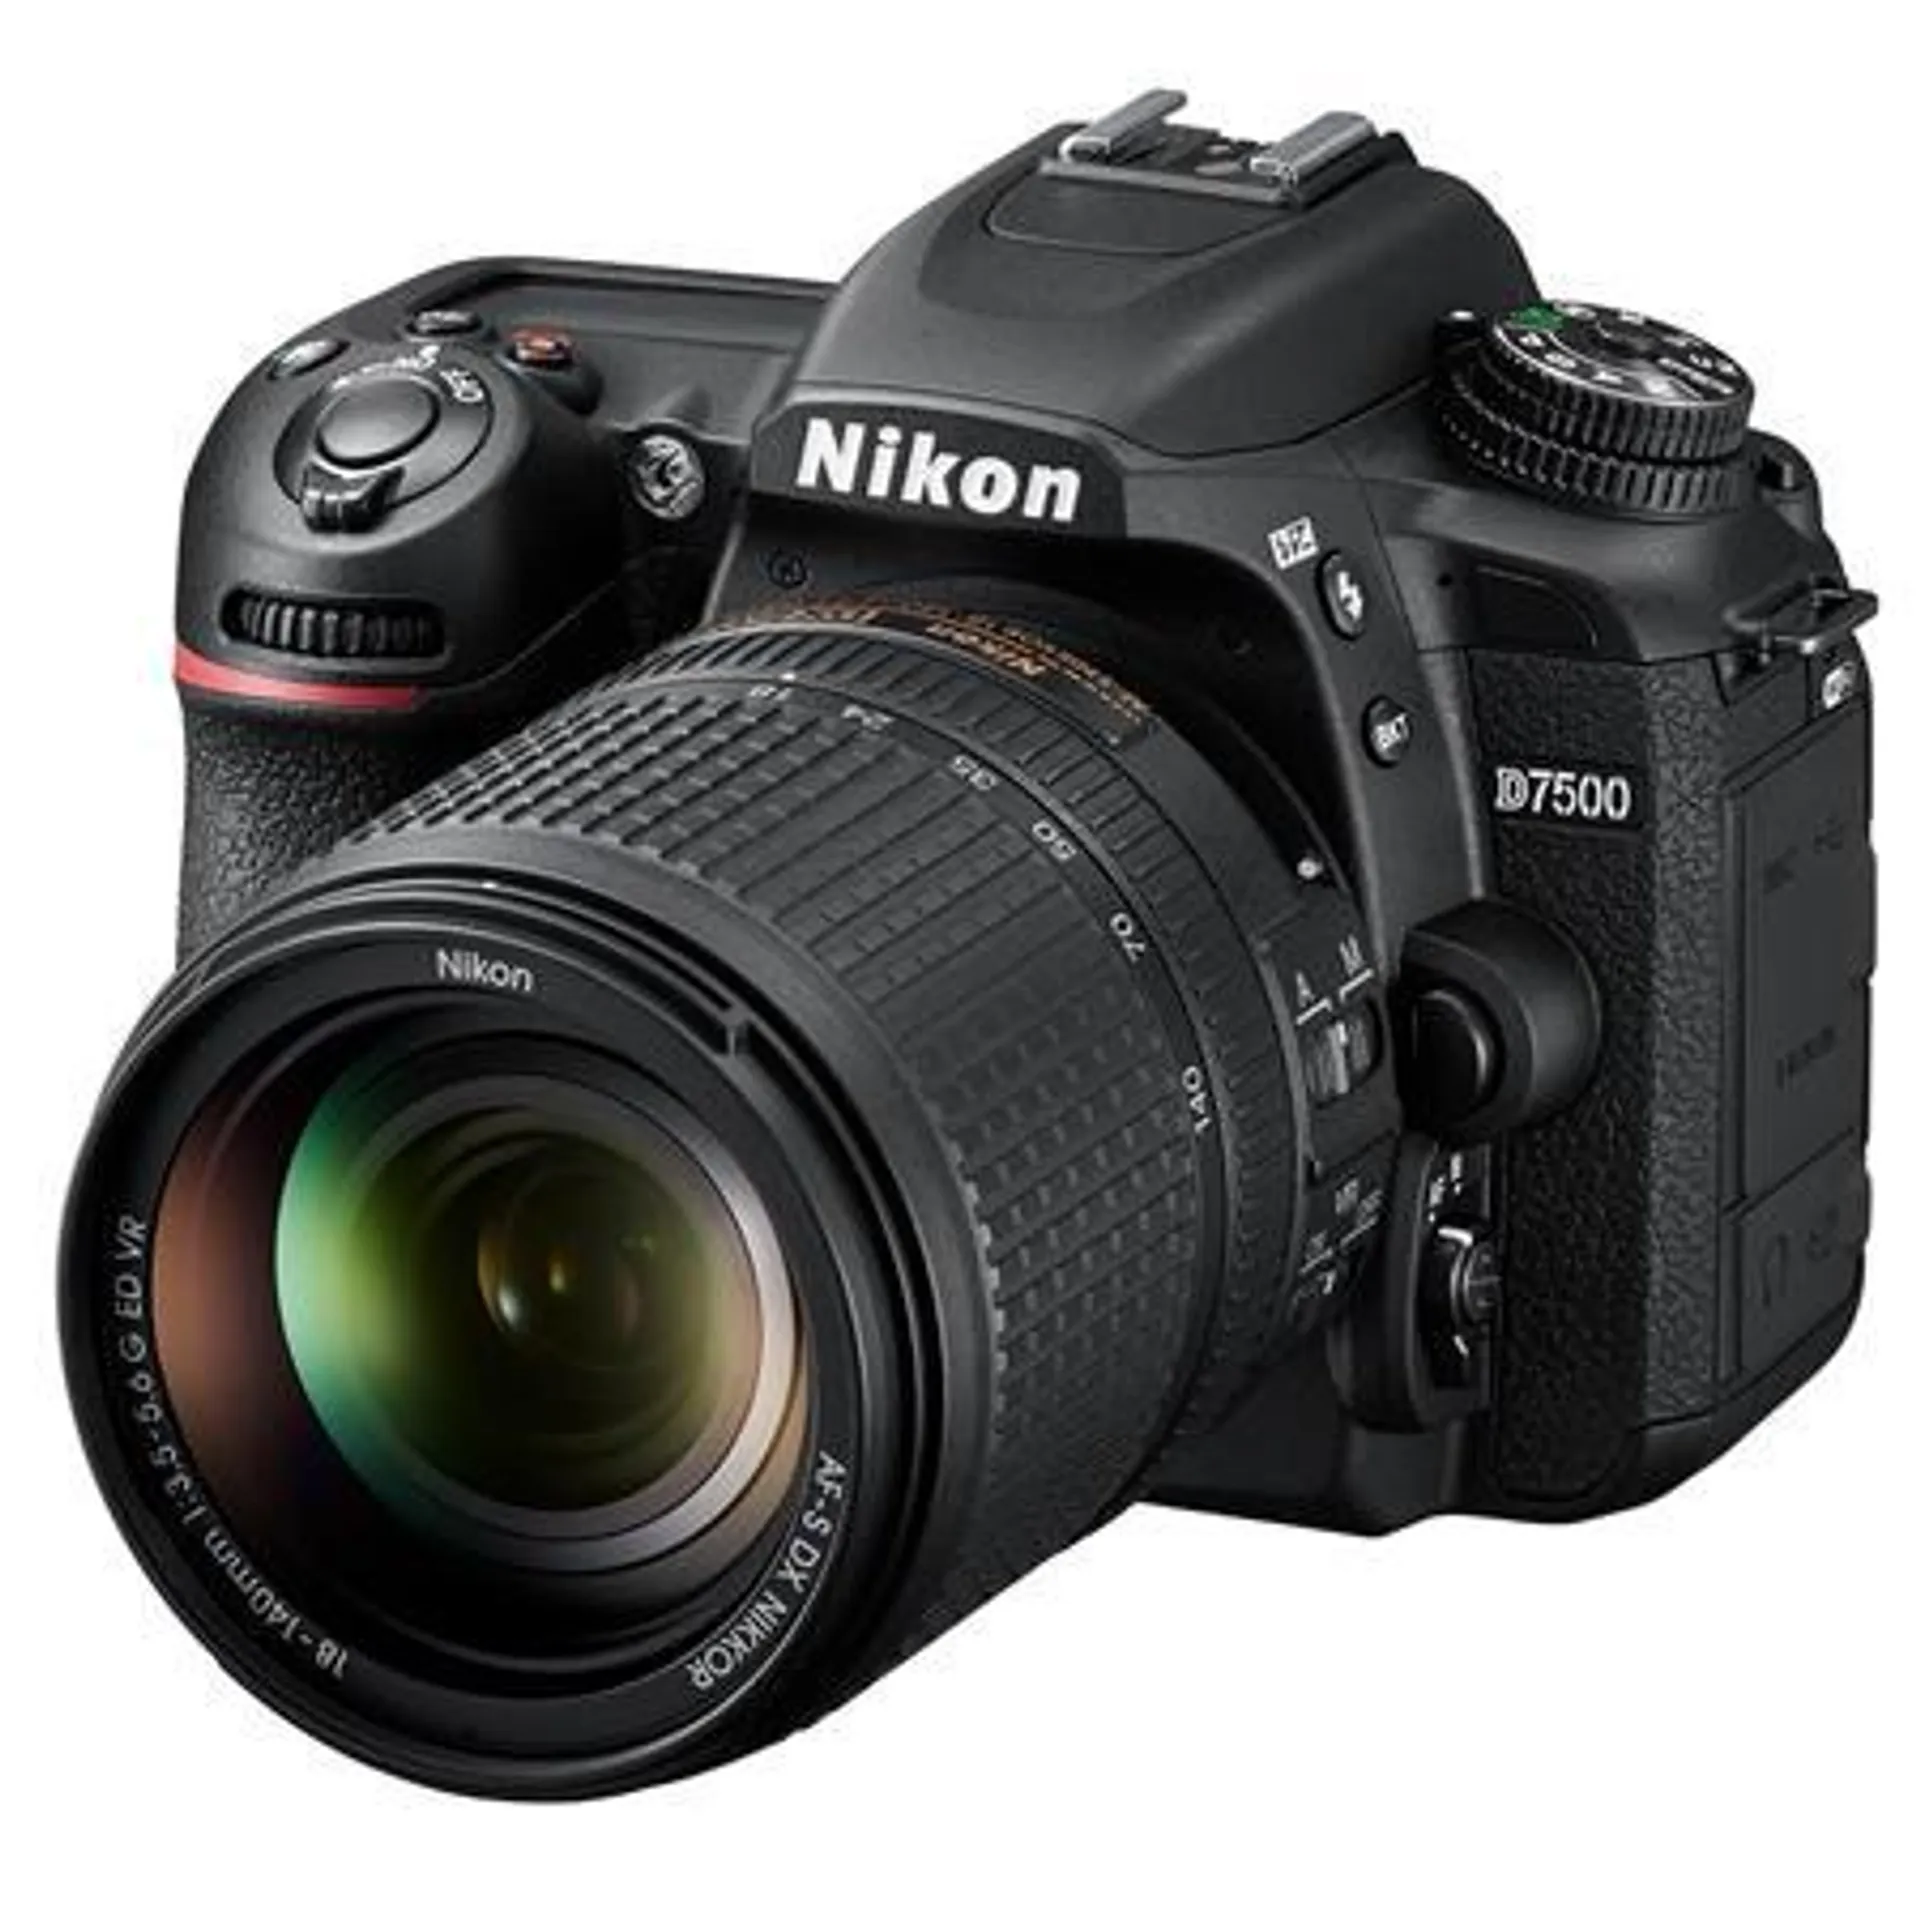 Nikon D7500 DSLR with AF-S DX NIKKOR 18-140mm f/3.5-5.6G ED VR Lens